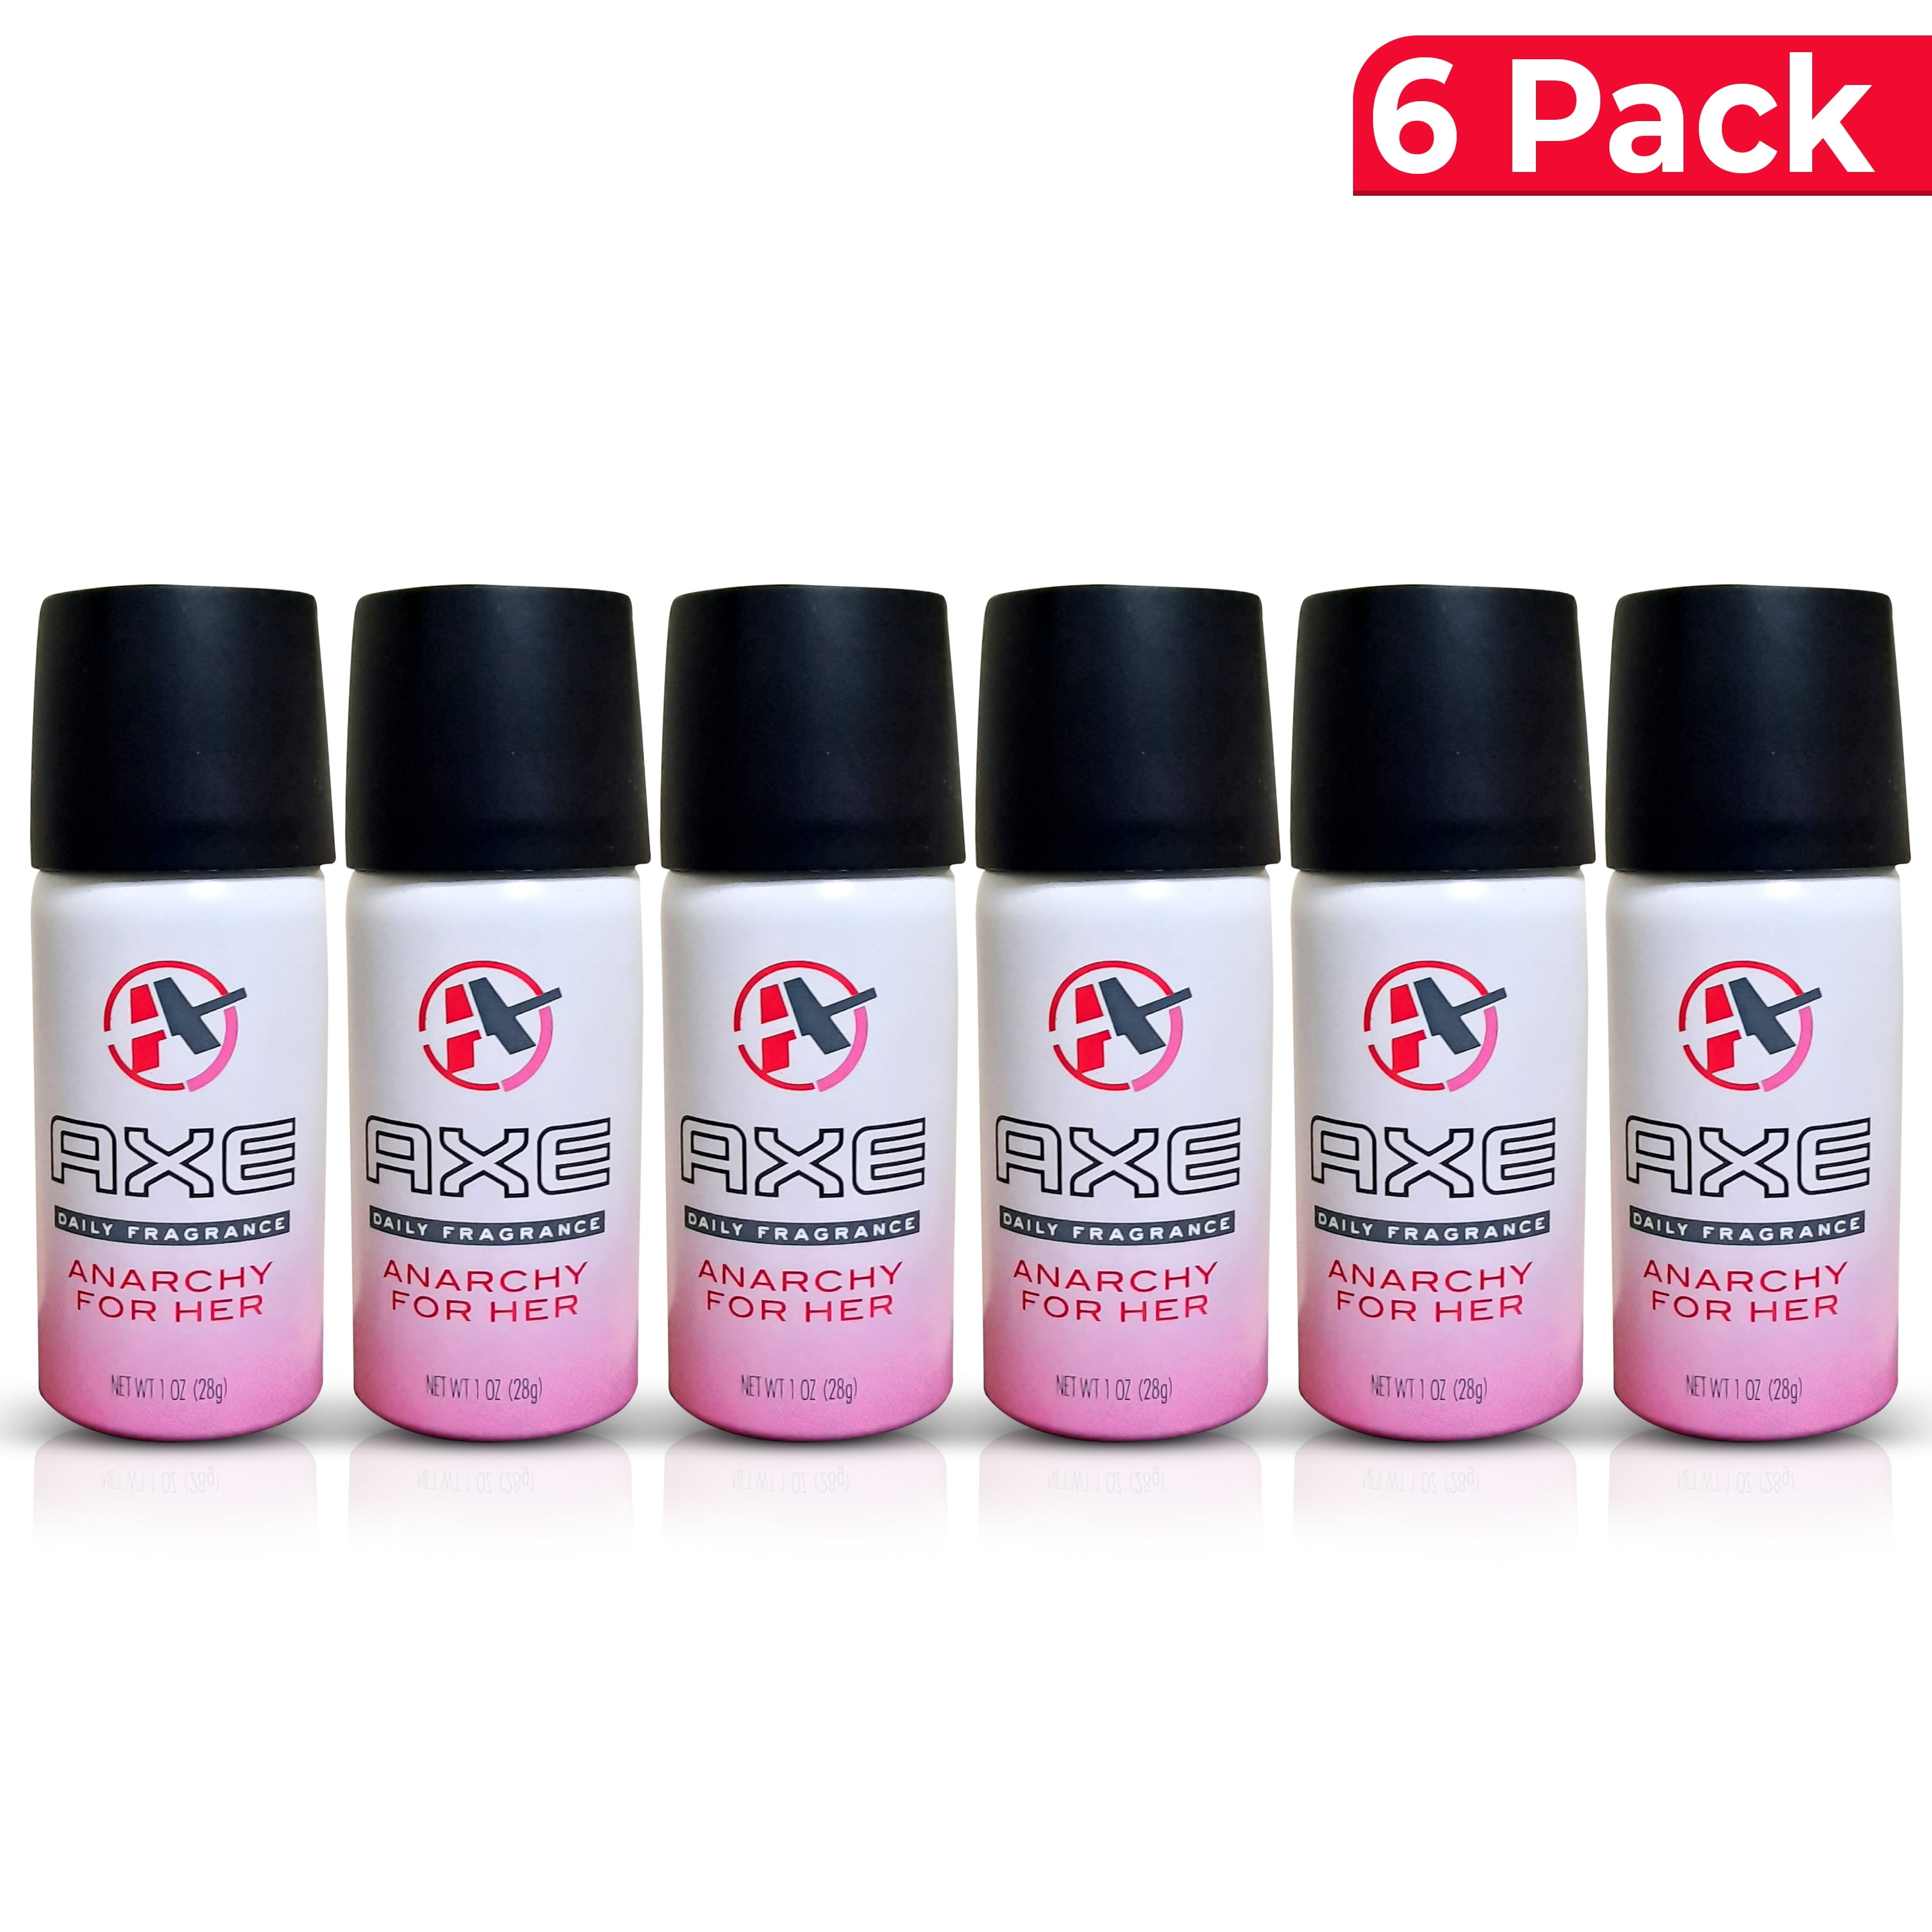 Roos Eerlijk pion Axe Anarchy Body Spray for Women, 1 Oz, 6 Pack - Walmart.com